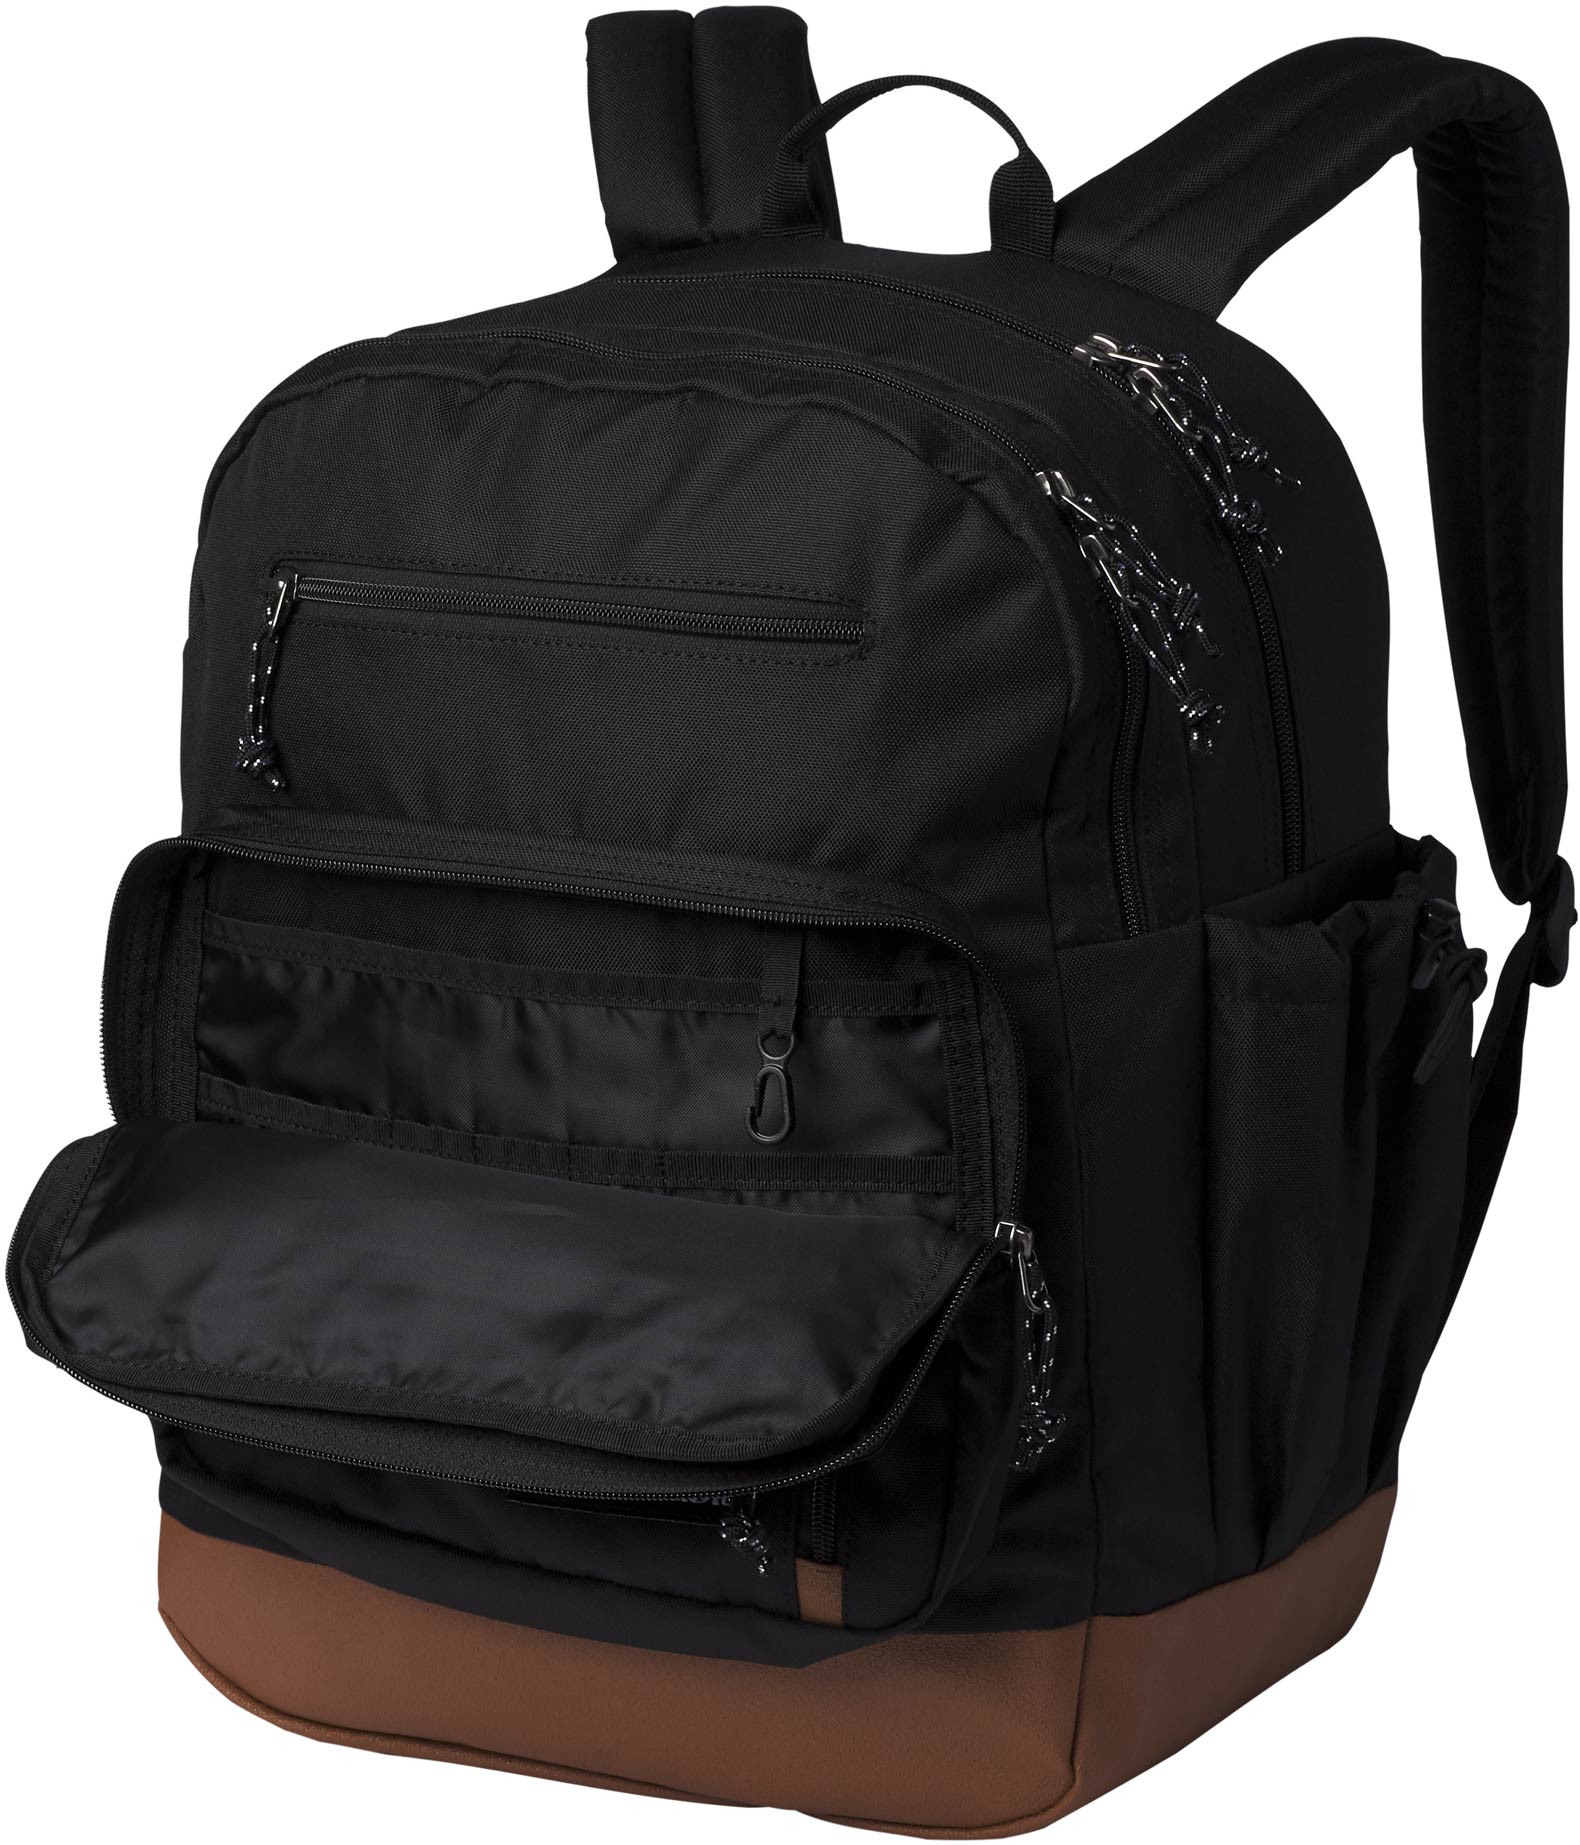 Modern backpack